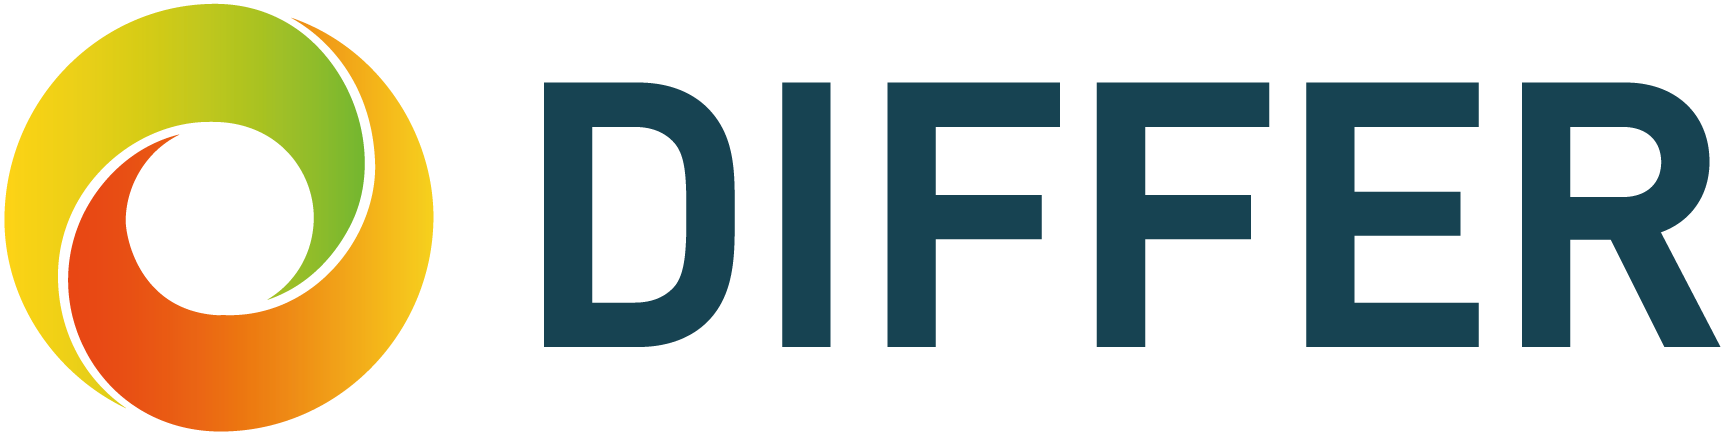 DIFFER logo 2019